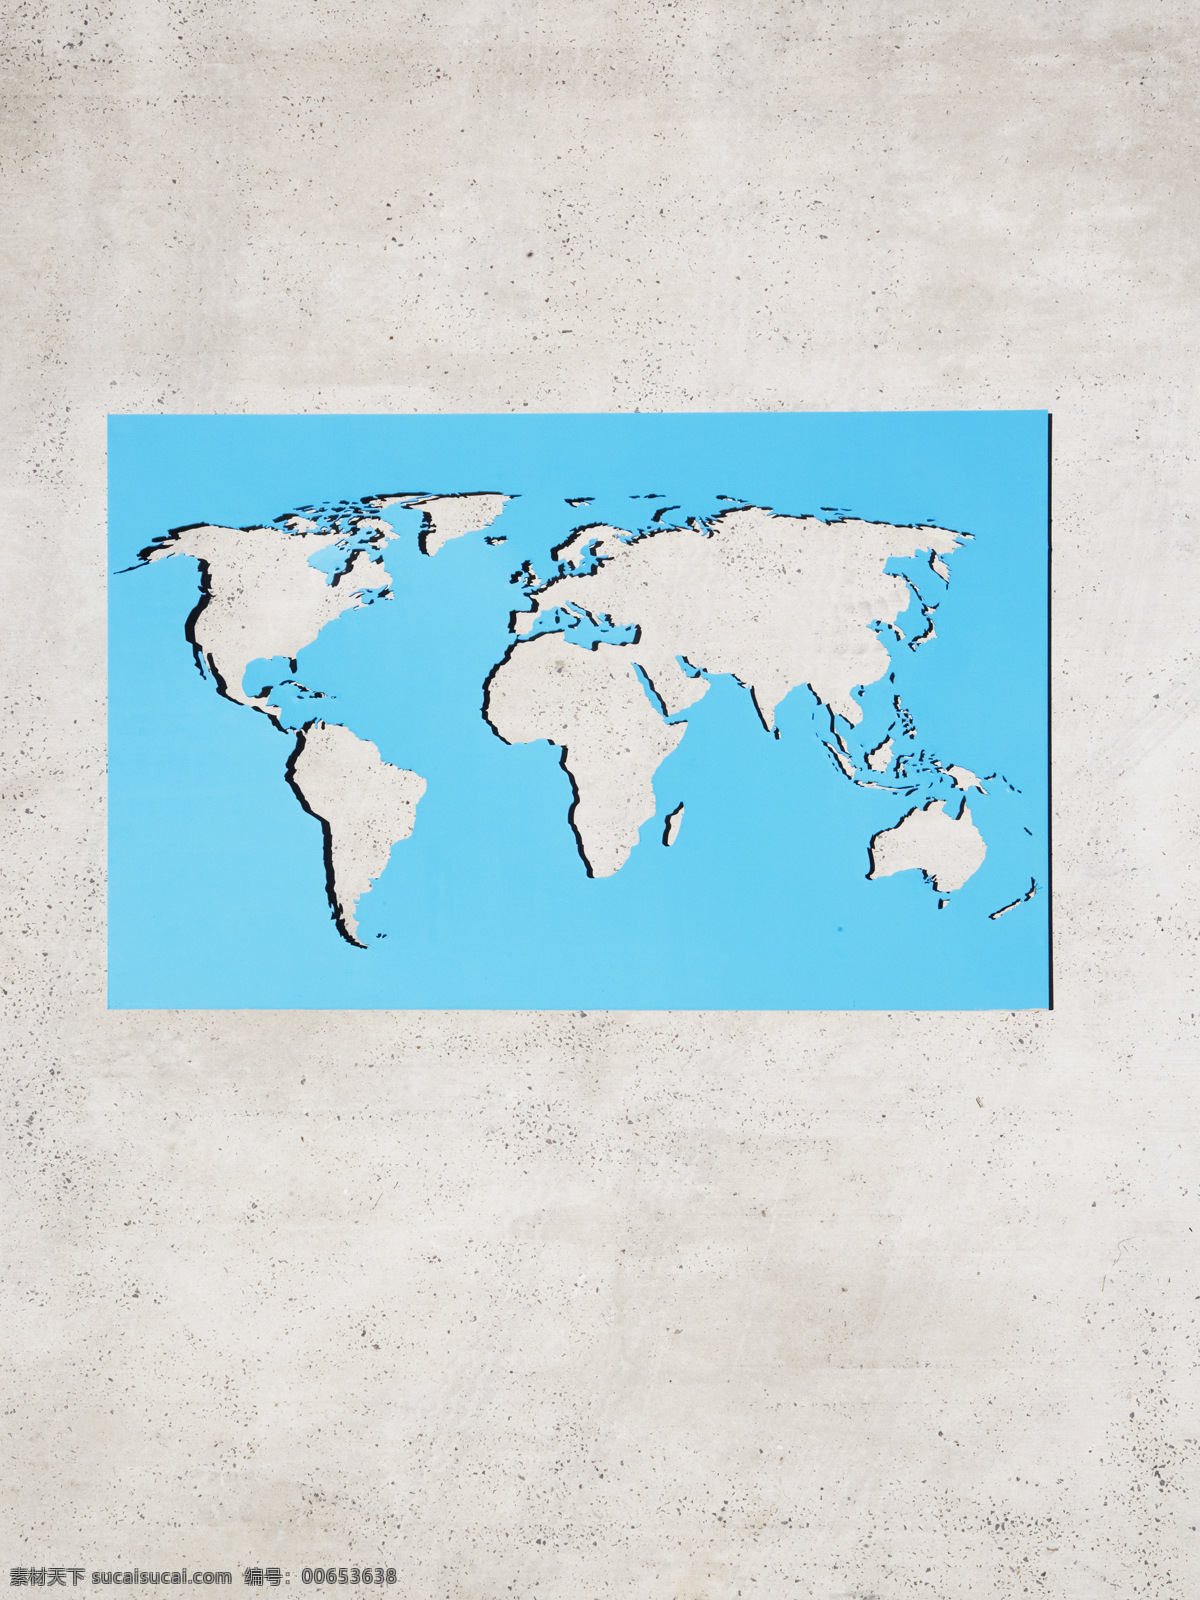 镂空 世界地图 素材图片 商务 金融贸易 全球化 地球 高清图片 创意设计 展开 图 镂空世界地图 创意摄影 广告设计素材 地球素材 商业素材 现代商务 商务金融